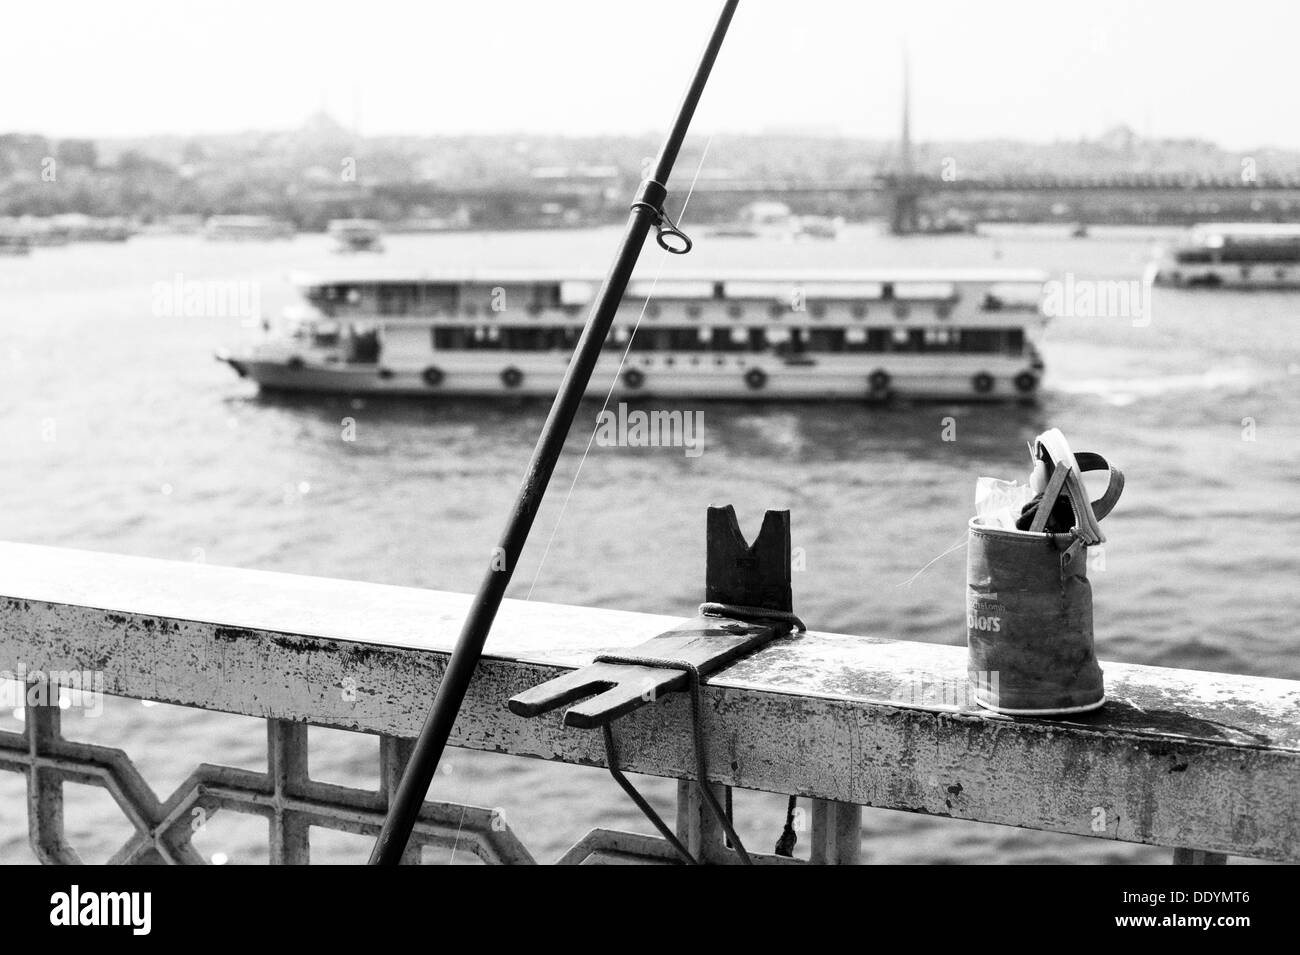 Entnommen aus der Galata-Brücke über den Bosporus in Istanbul. Es gibt eine Angelrute im Vordergrund und einem Kreuzfahrt-Schiff. Stockfoto